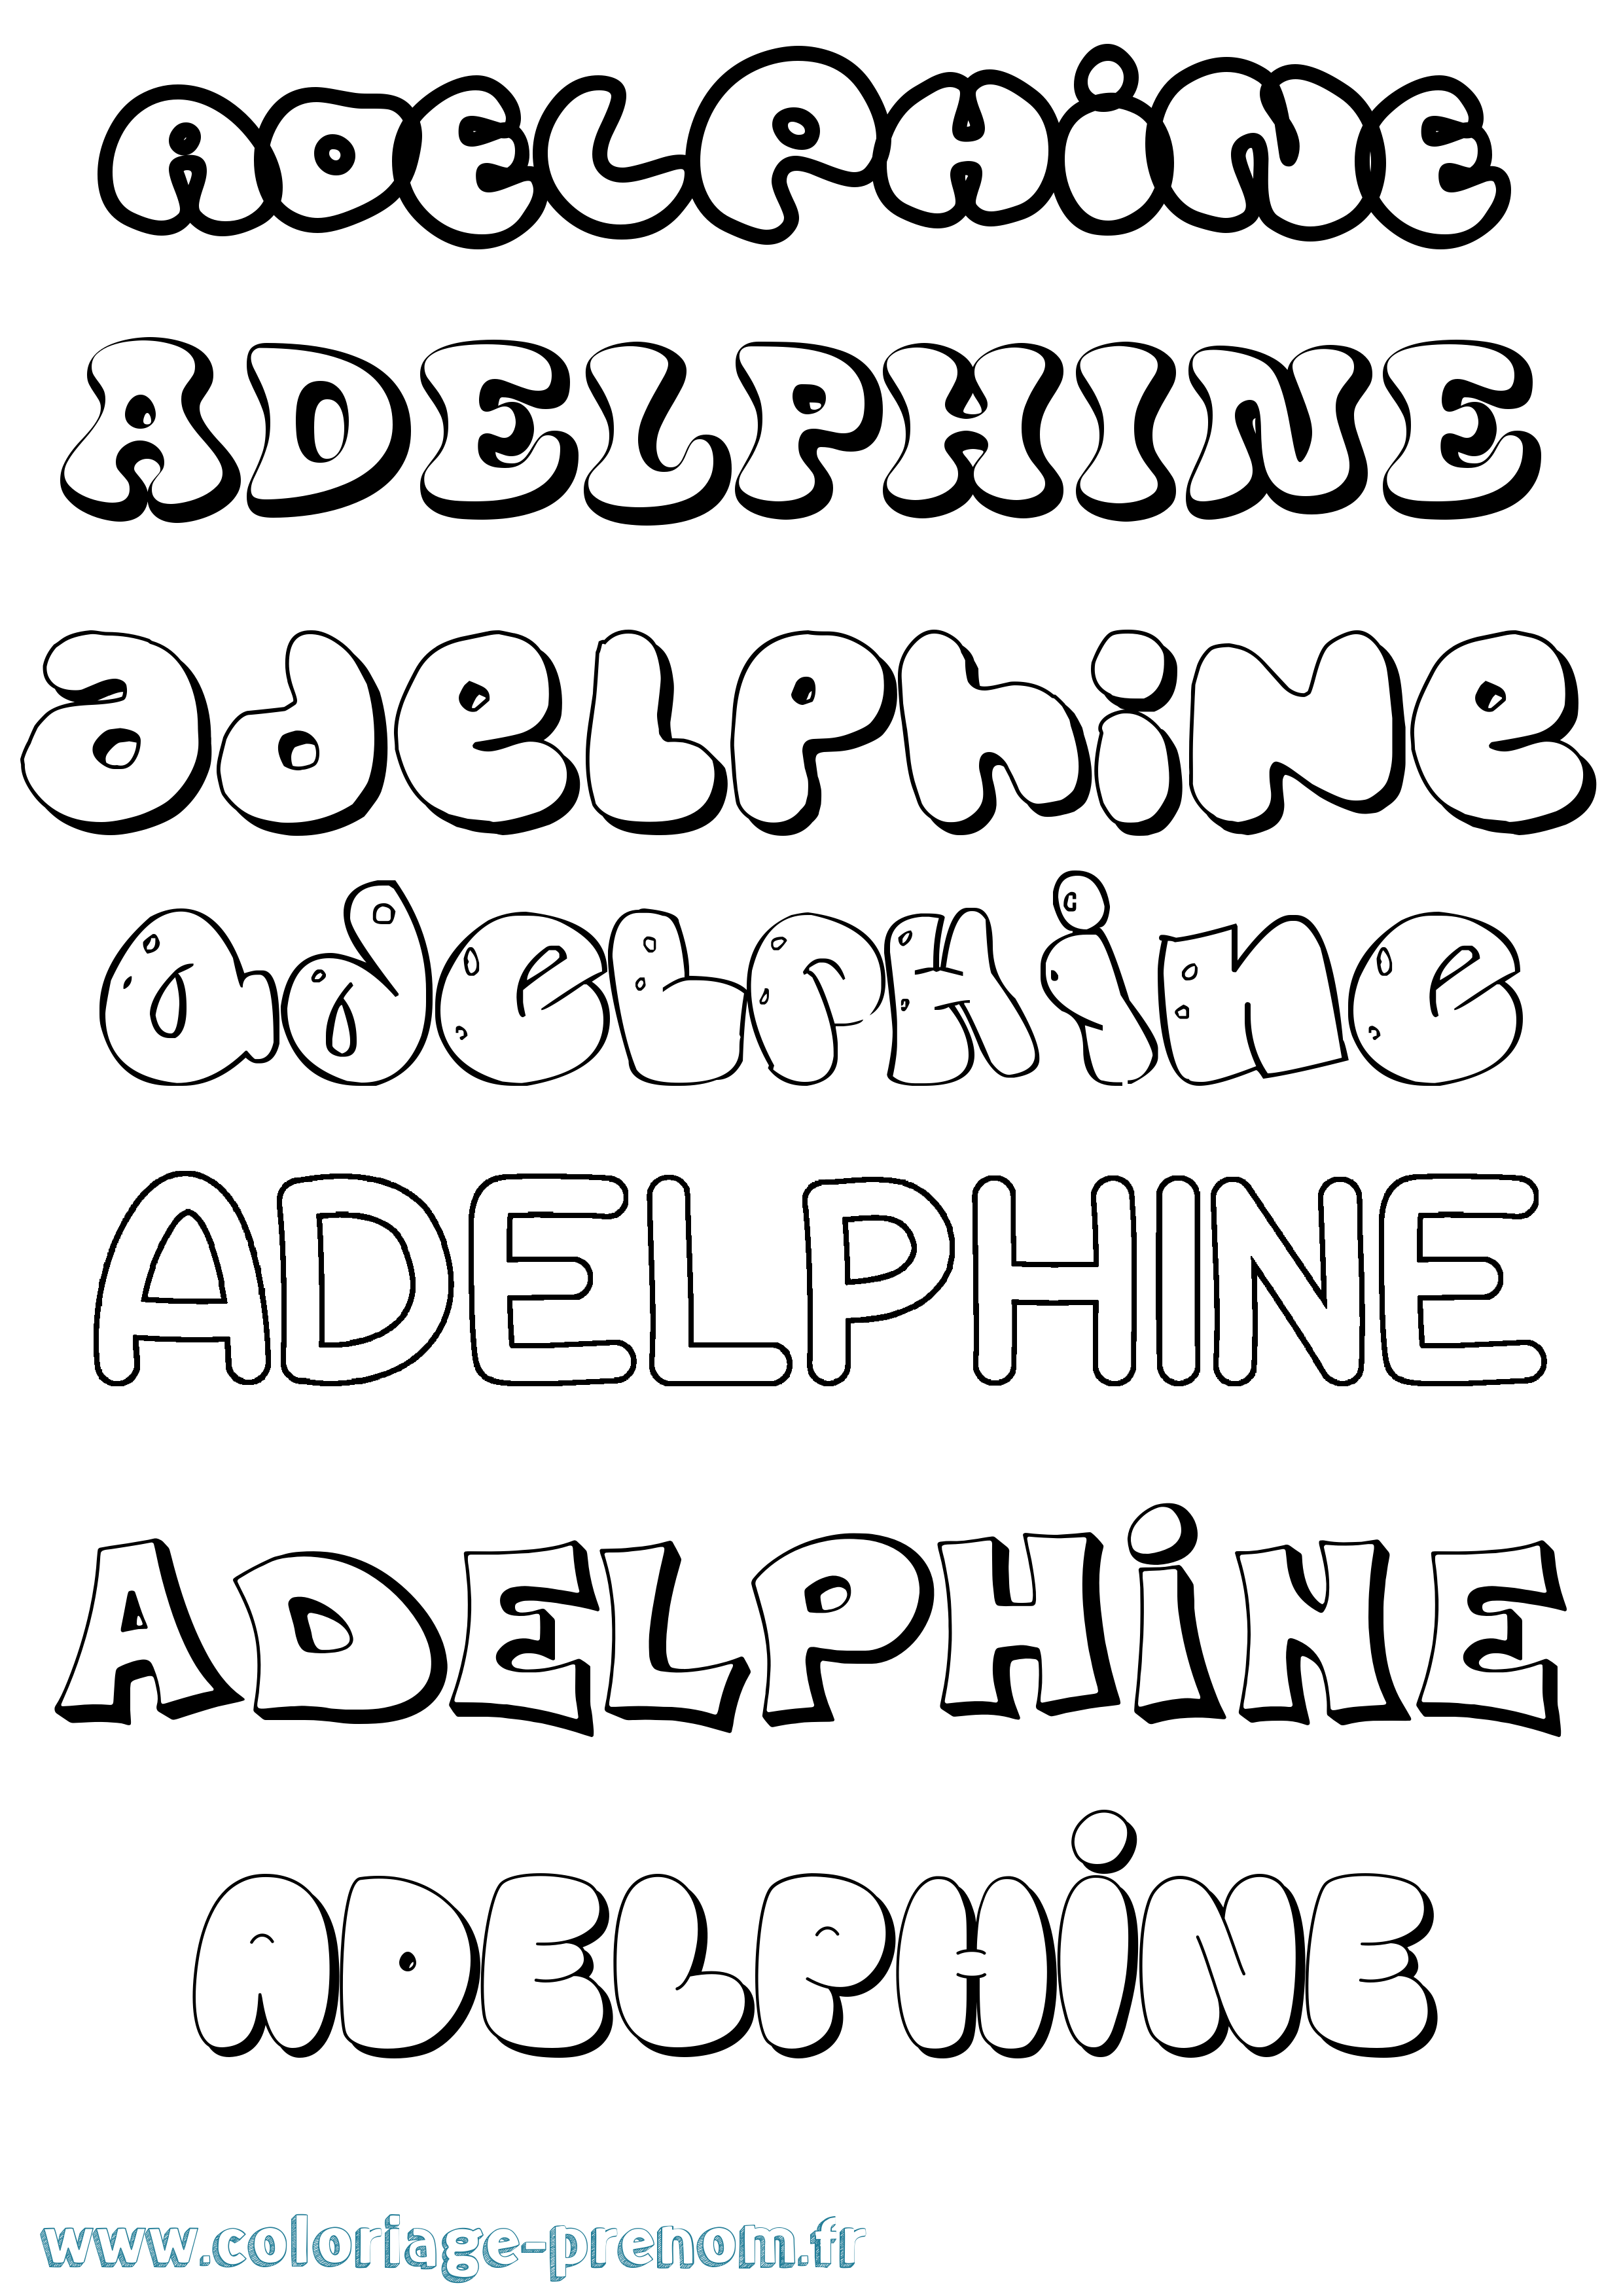 Coloriage prénom Adelphine Bubble